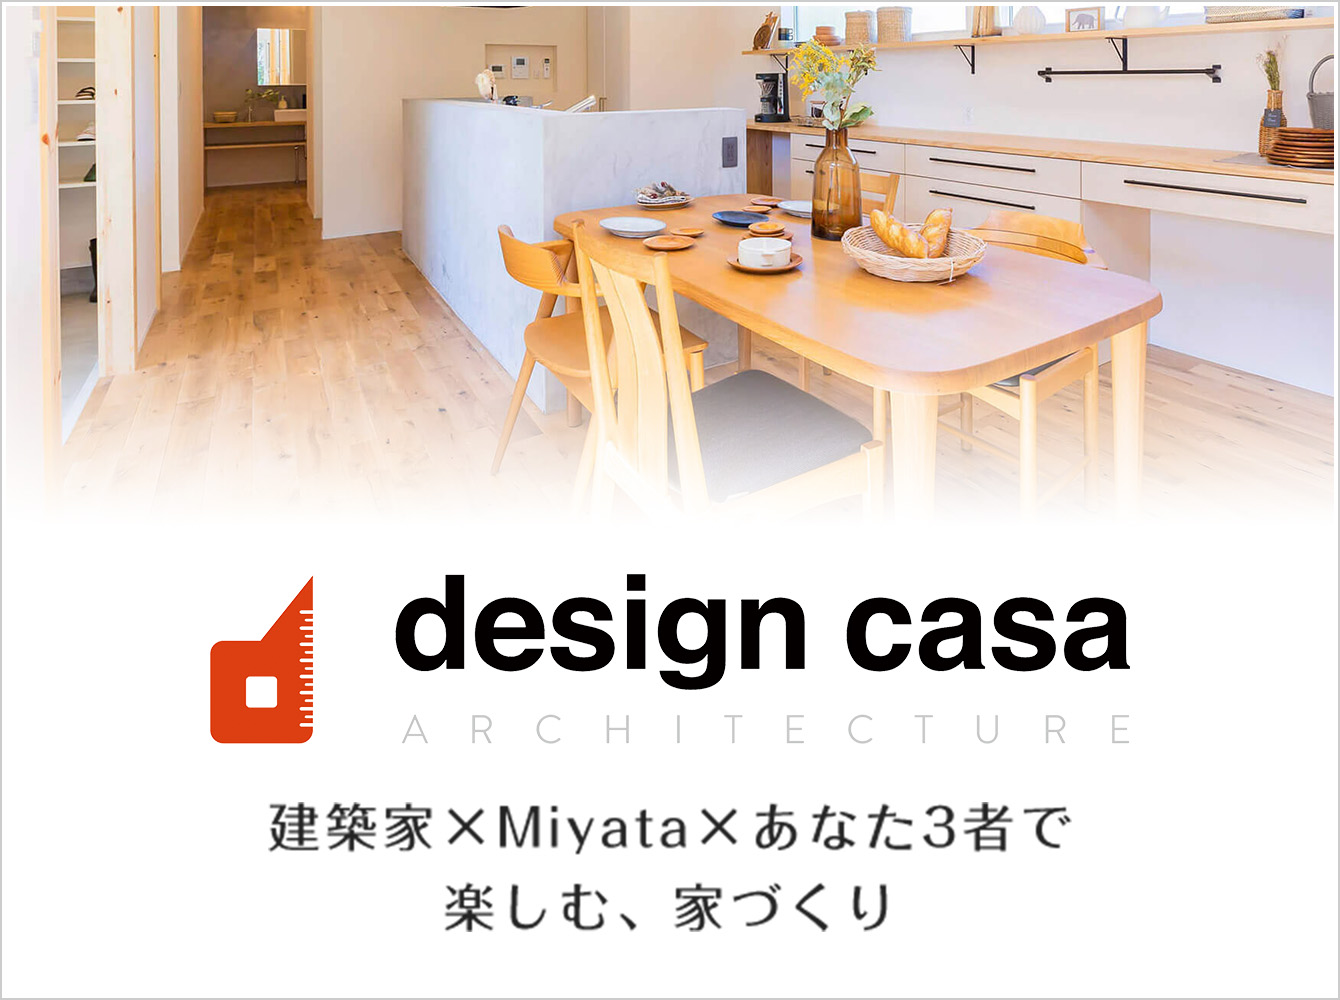 design casa 建築家×Miyata×あなた3者で楽しむ、家づくり 